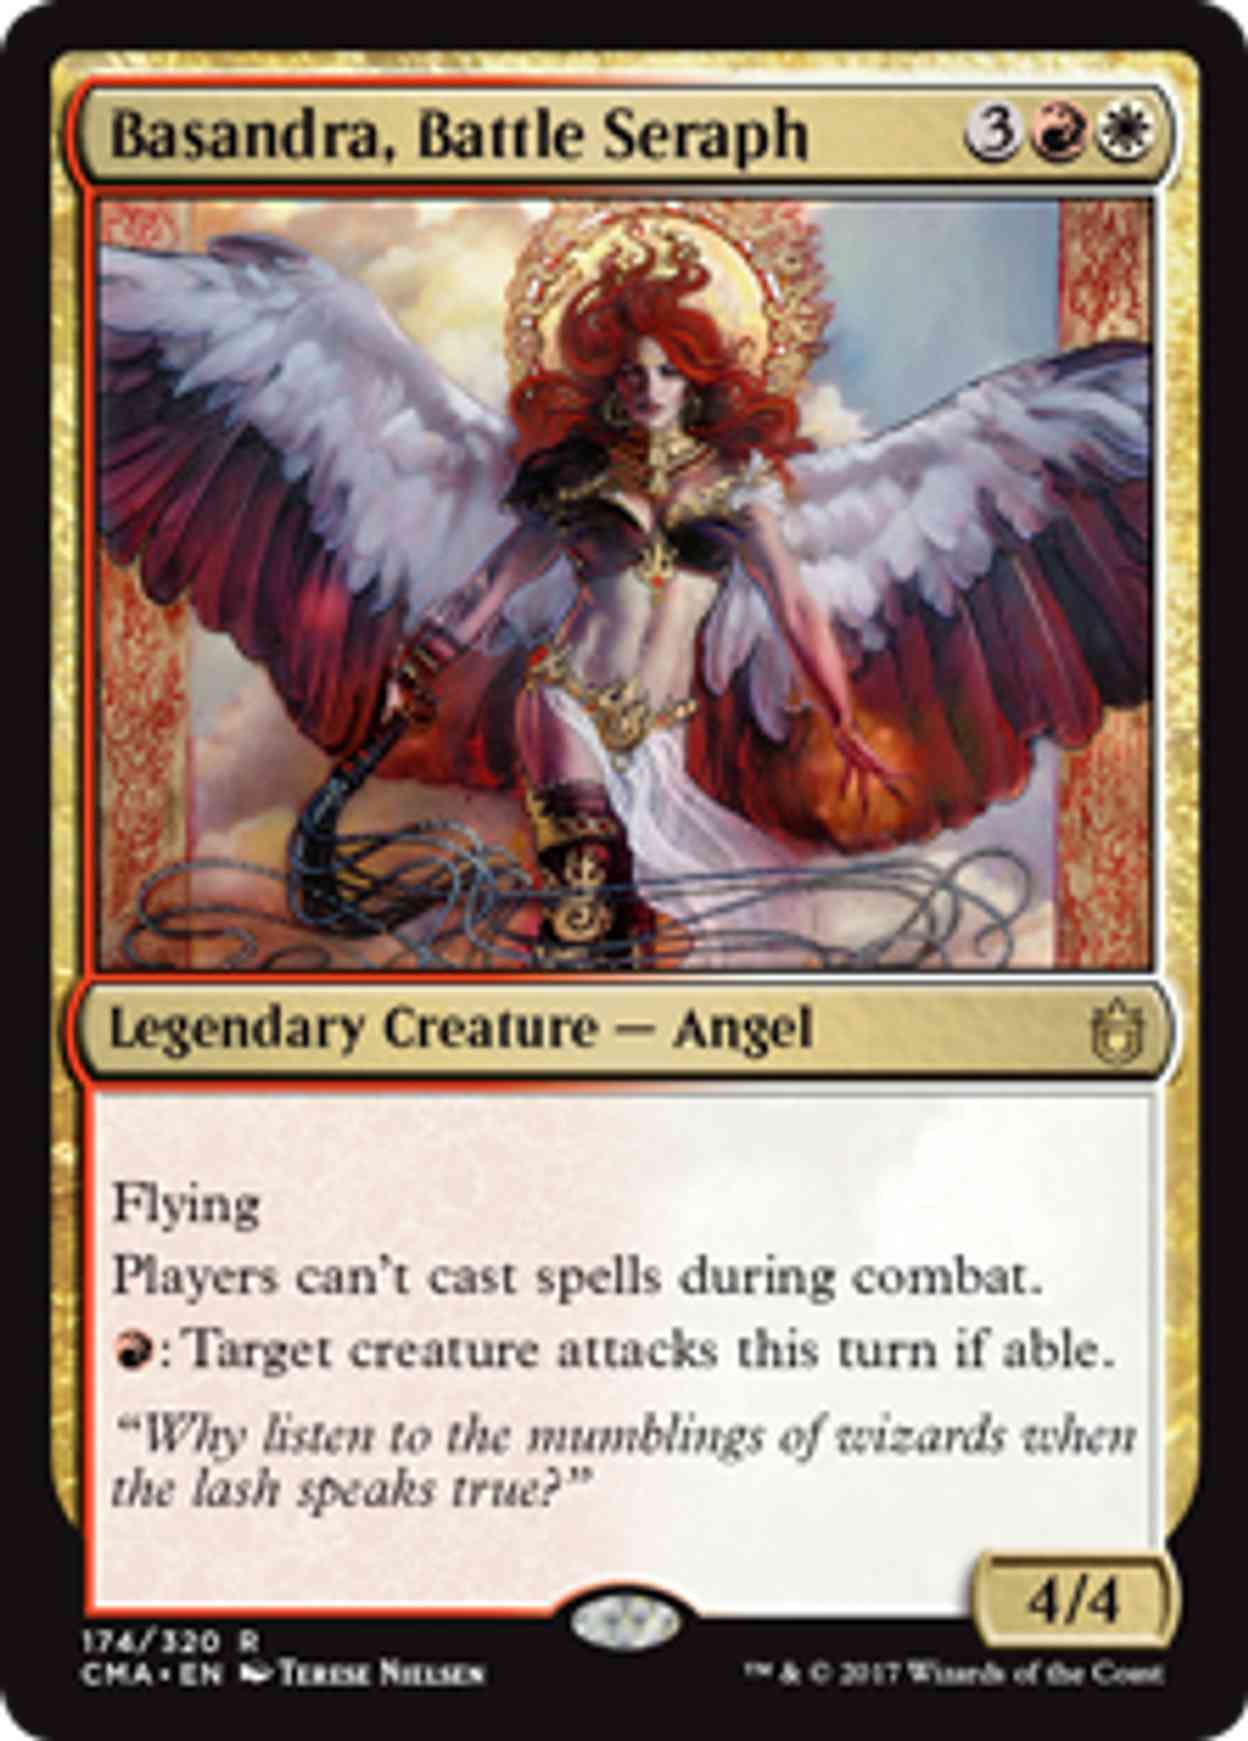 Basandra, Battle Seraph magic card front